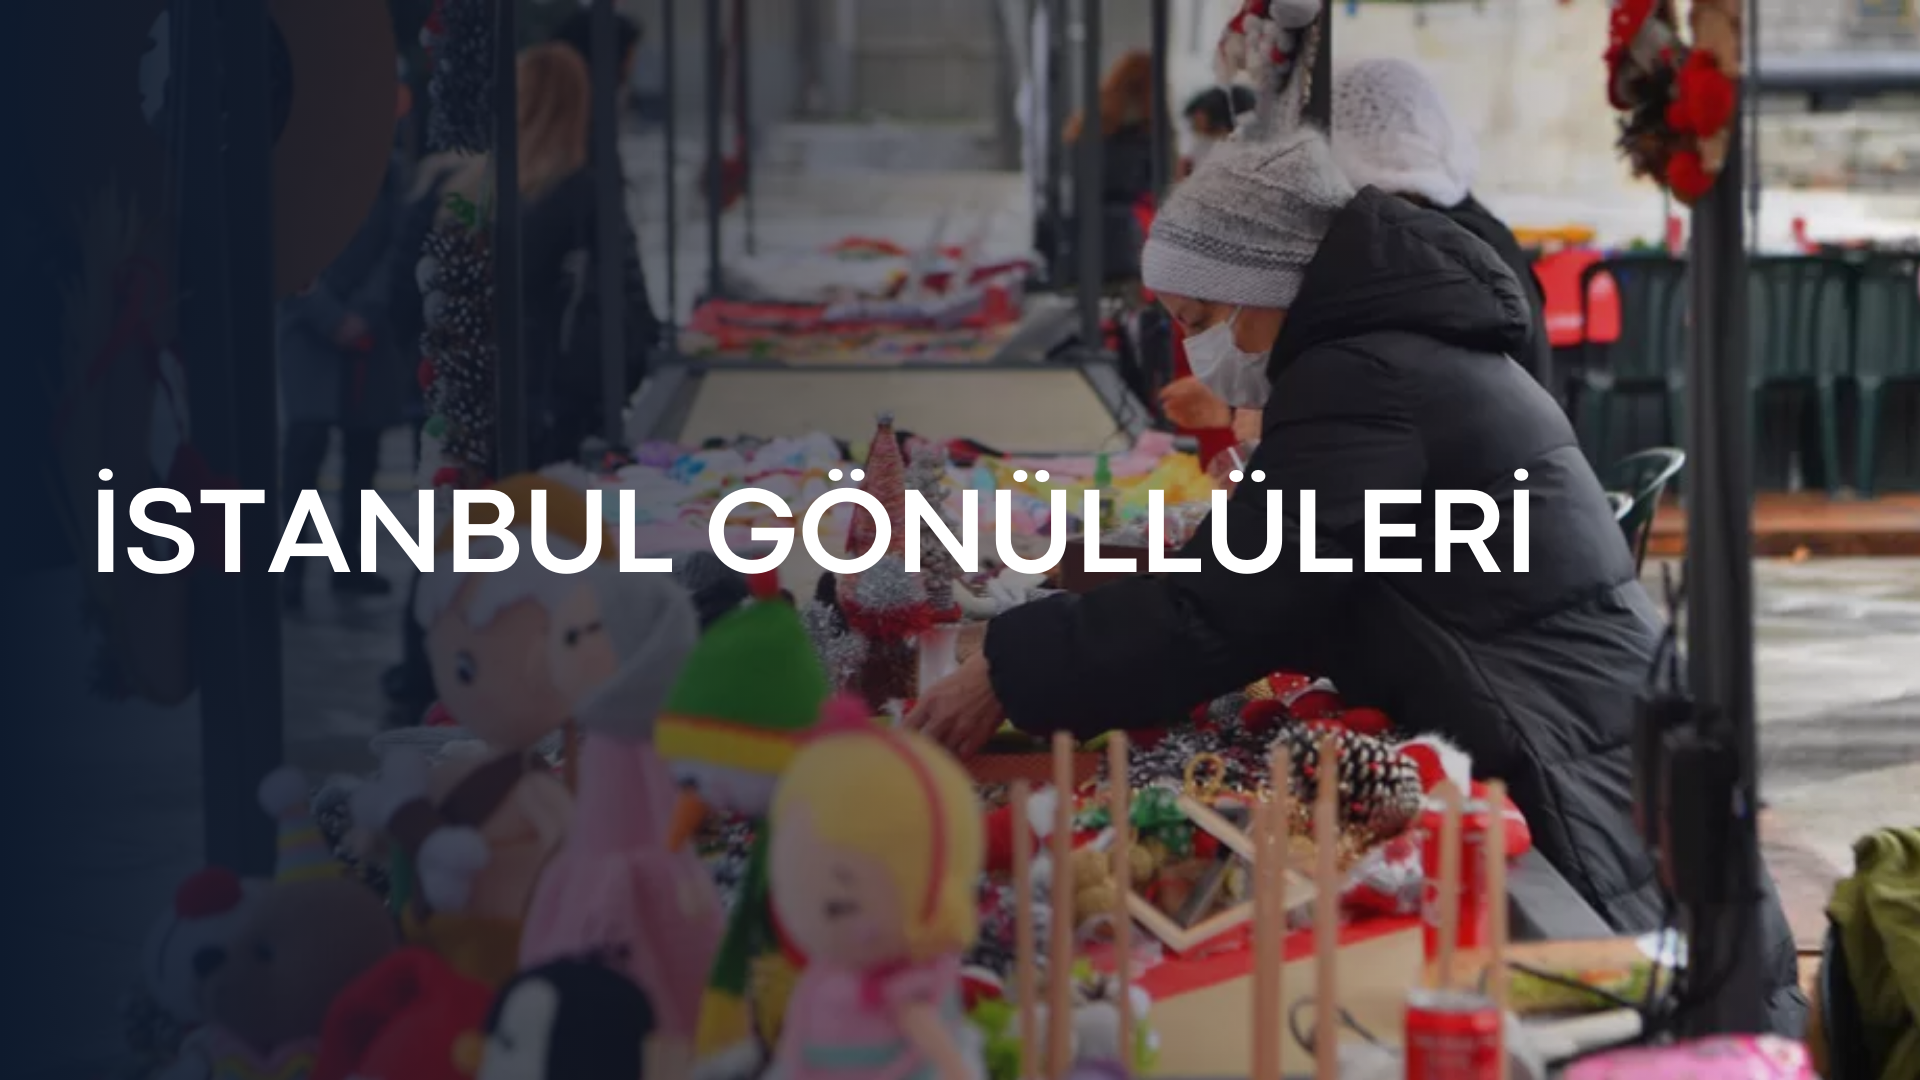 İstanbul Büyükşehir Belediyesi (İBB) Desteği ile İstanbul Gönüllüleri İçin Önemli Bir Etsy Eğitim Etkinliği Gerçekleştirildi!